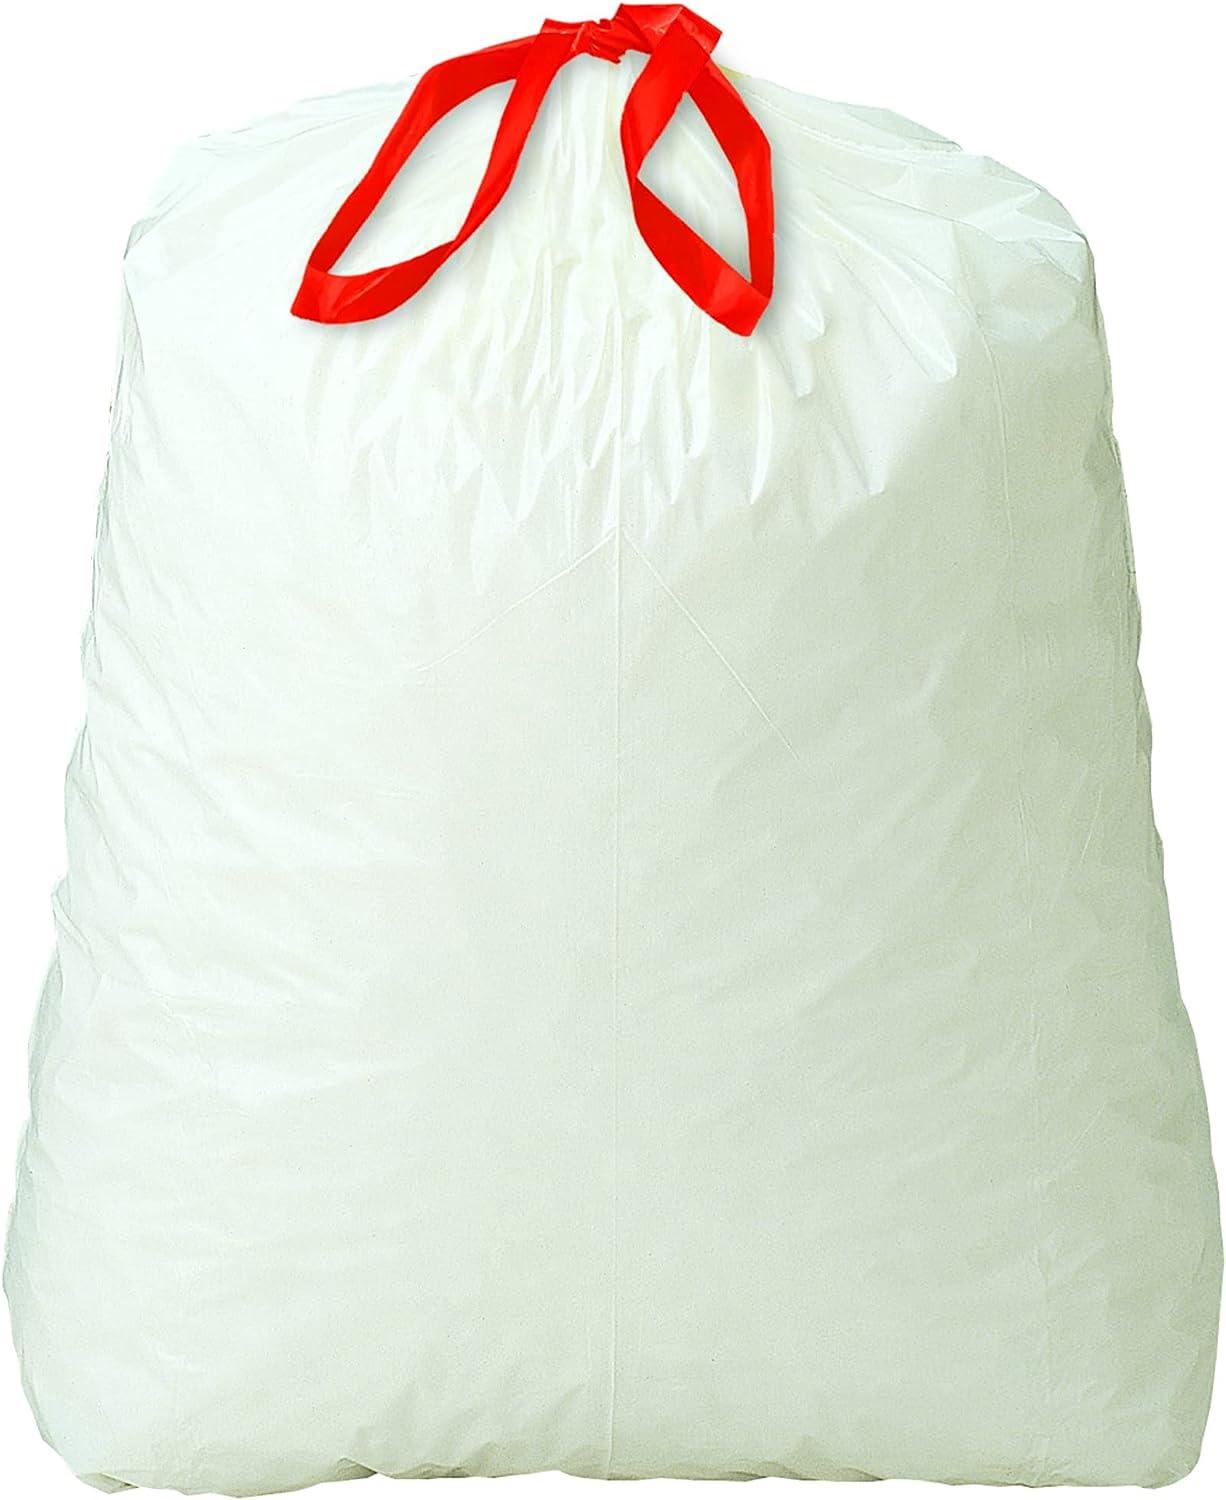 Reli. Bolsas de basura altas con cordón de cocina de 13 galones, 500  unidades a granel, bolsas de basura de cocina, blancas, 13 galones,  capacidad de